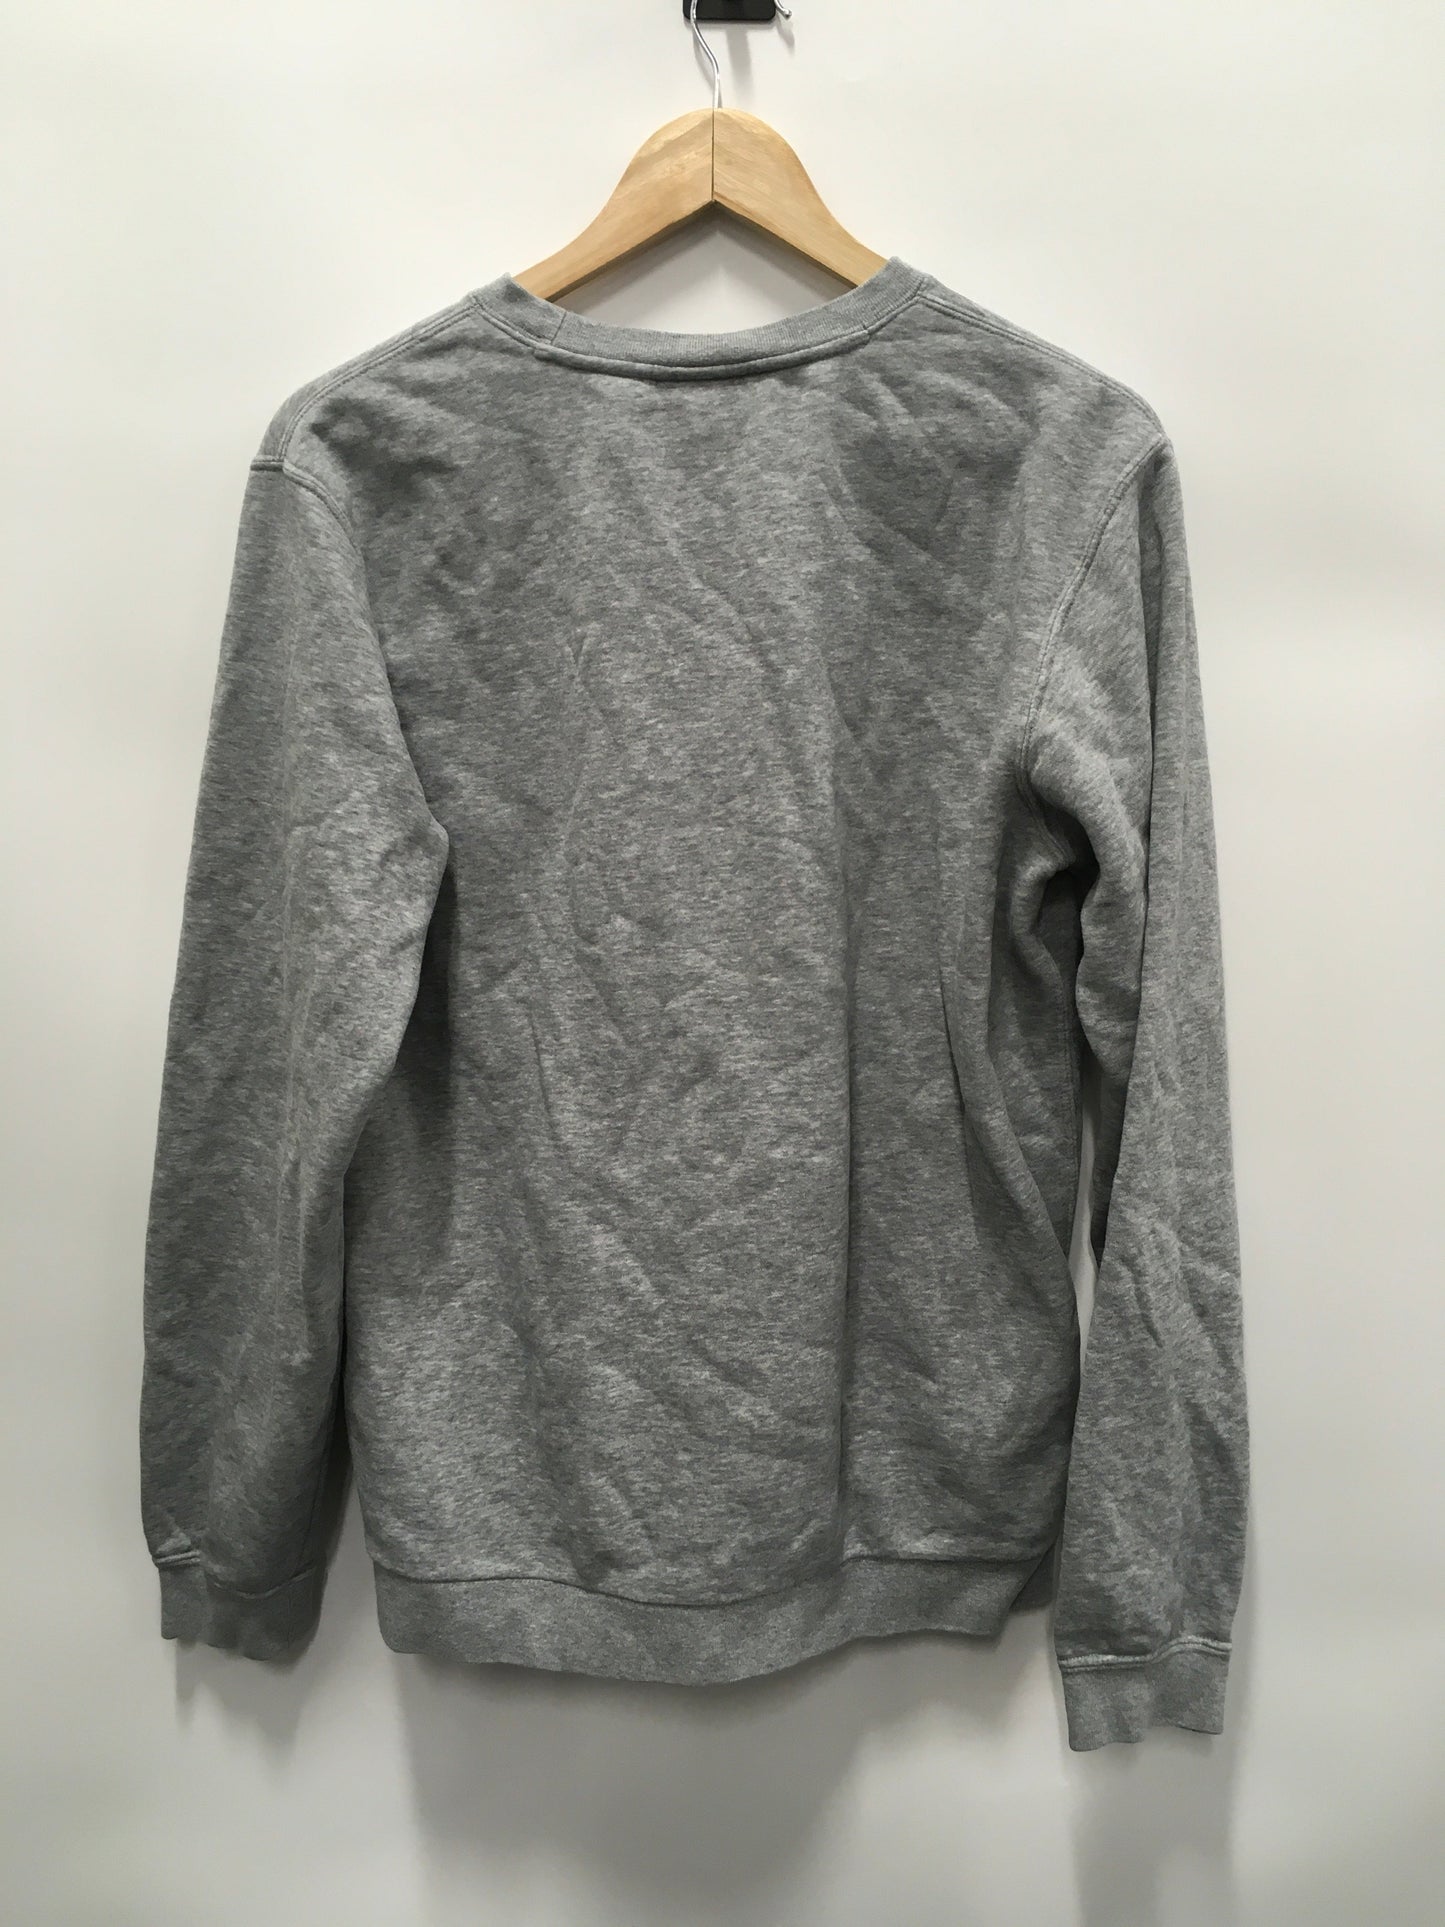 Grey Athletic Sweatshirt Crewneck Nike, Size M